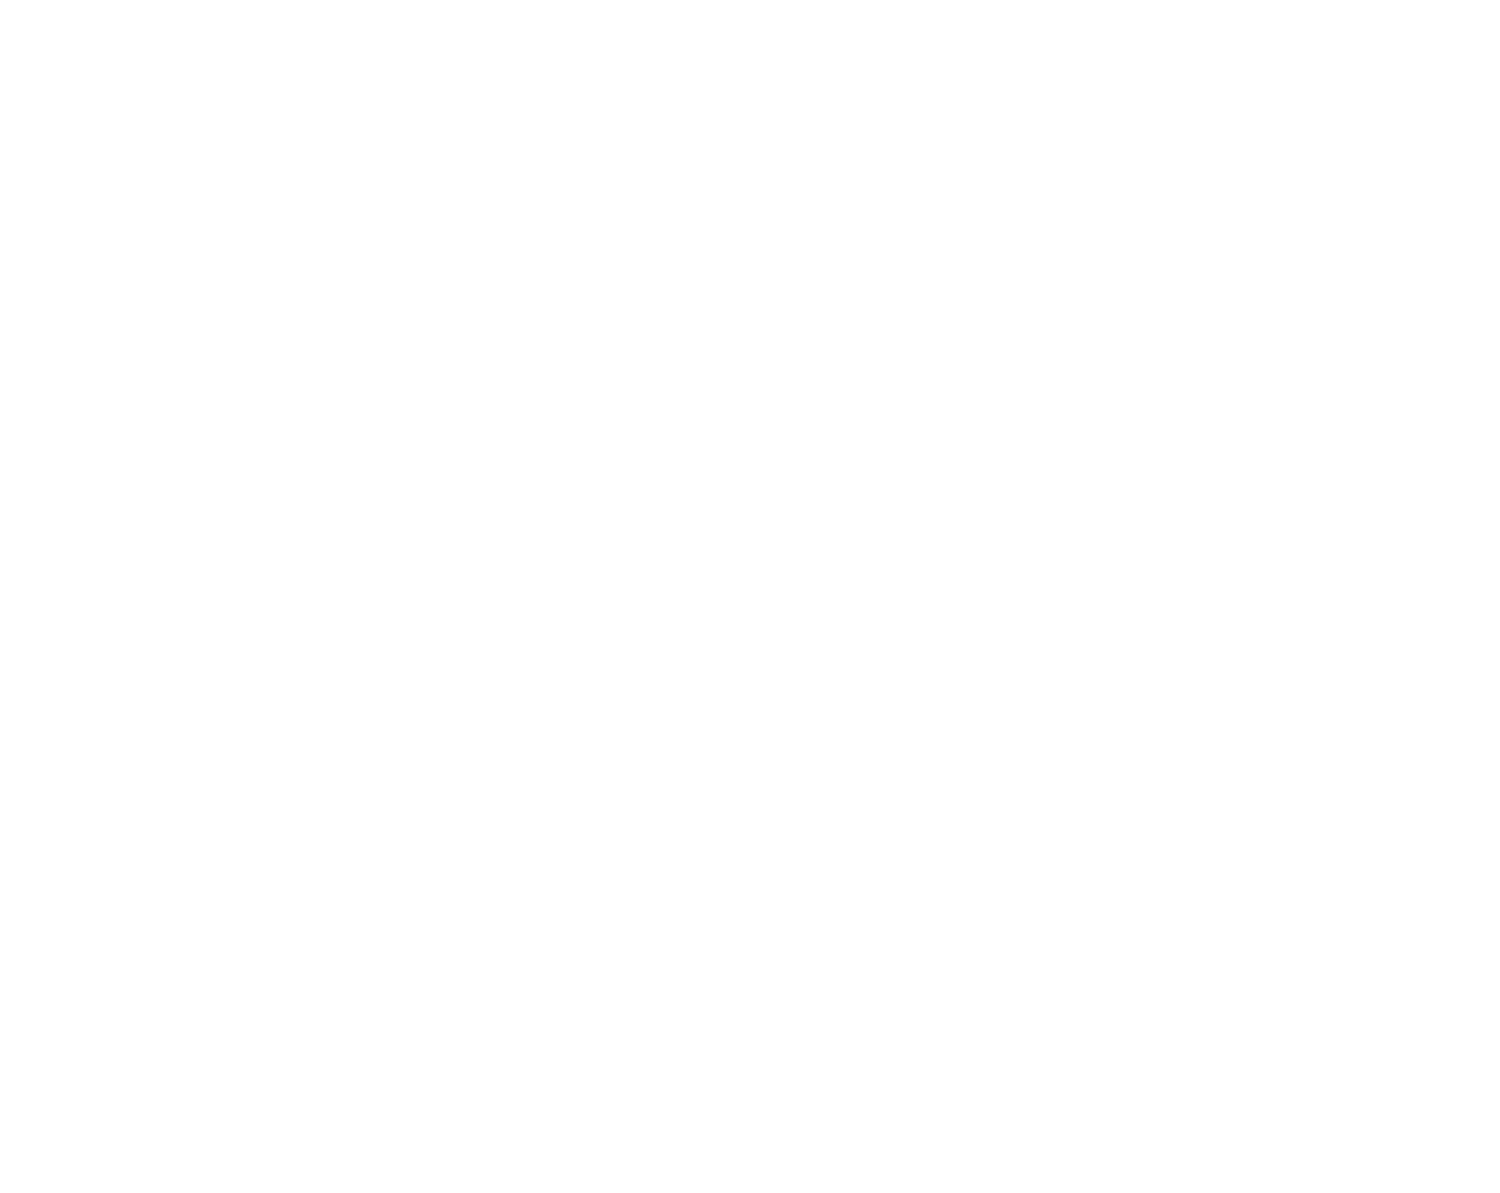 Printing Yes